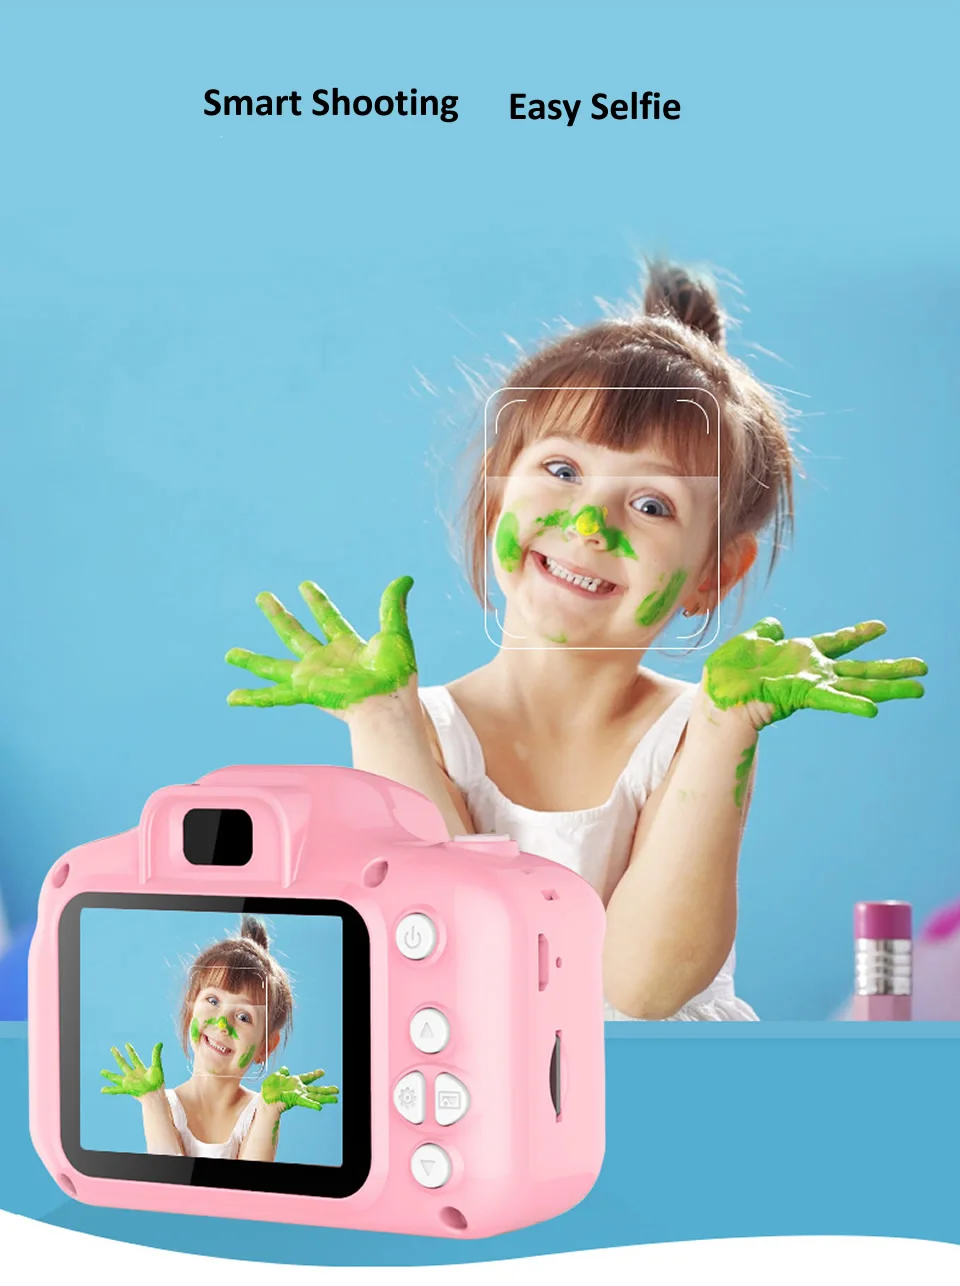 Детский мини-Камера детские развивающие игрушки для детей детские подарки на день рождения, подарок цифровой Камера 1080P HD проектора видео Камера